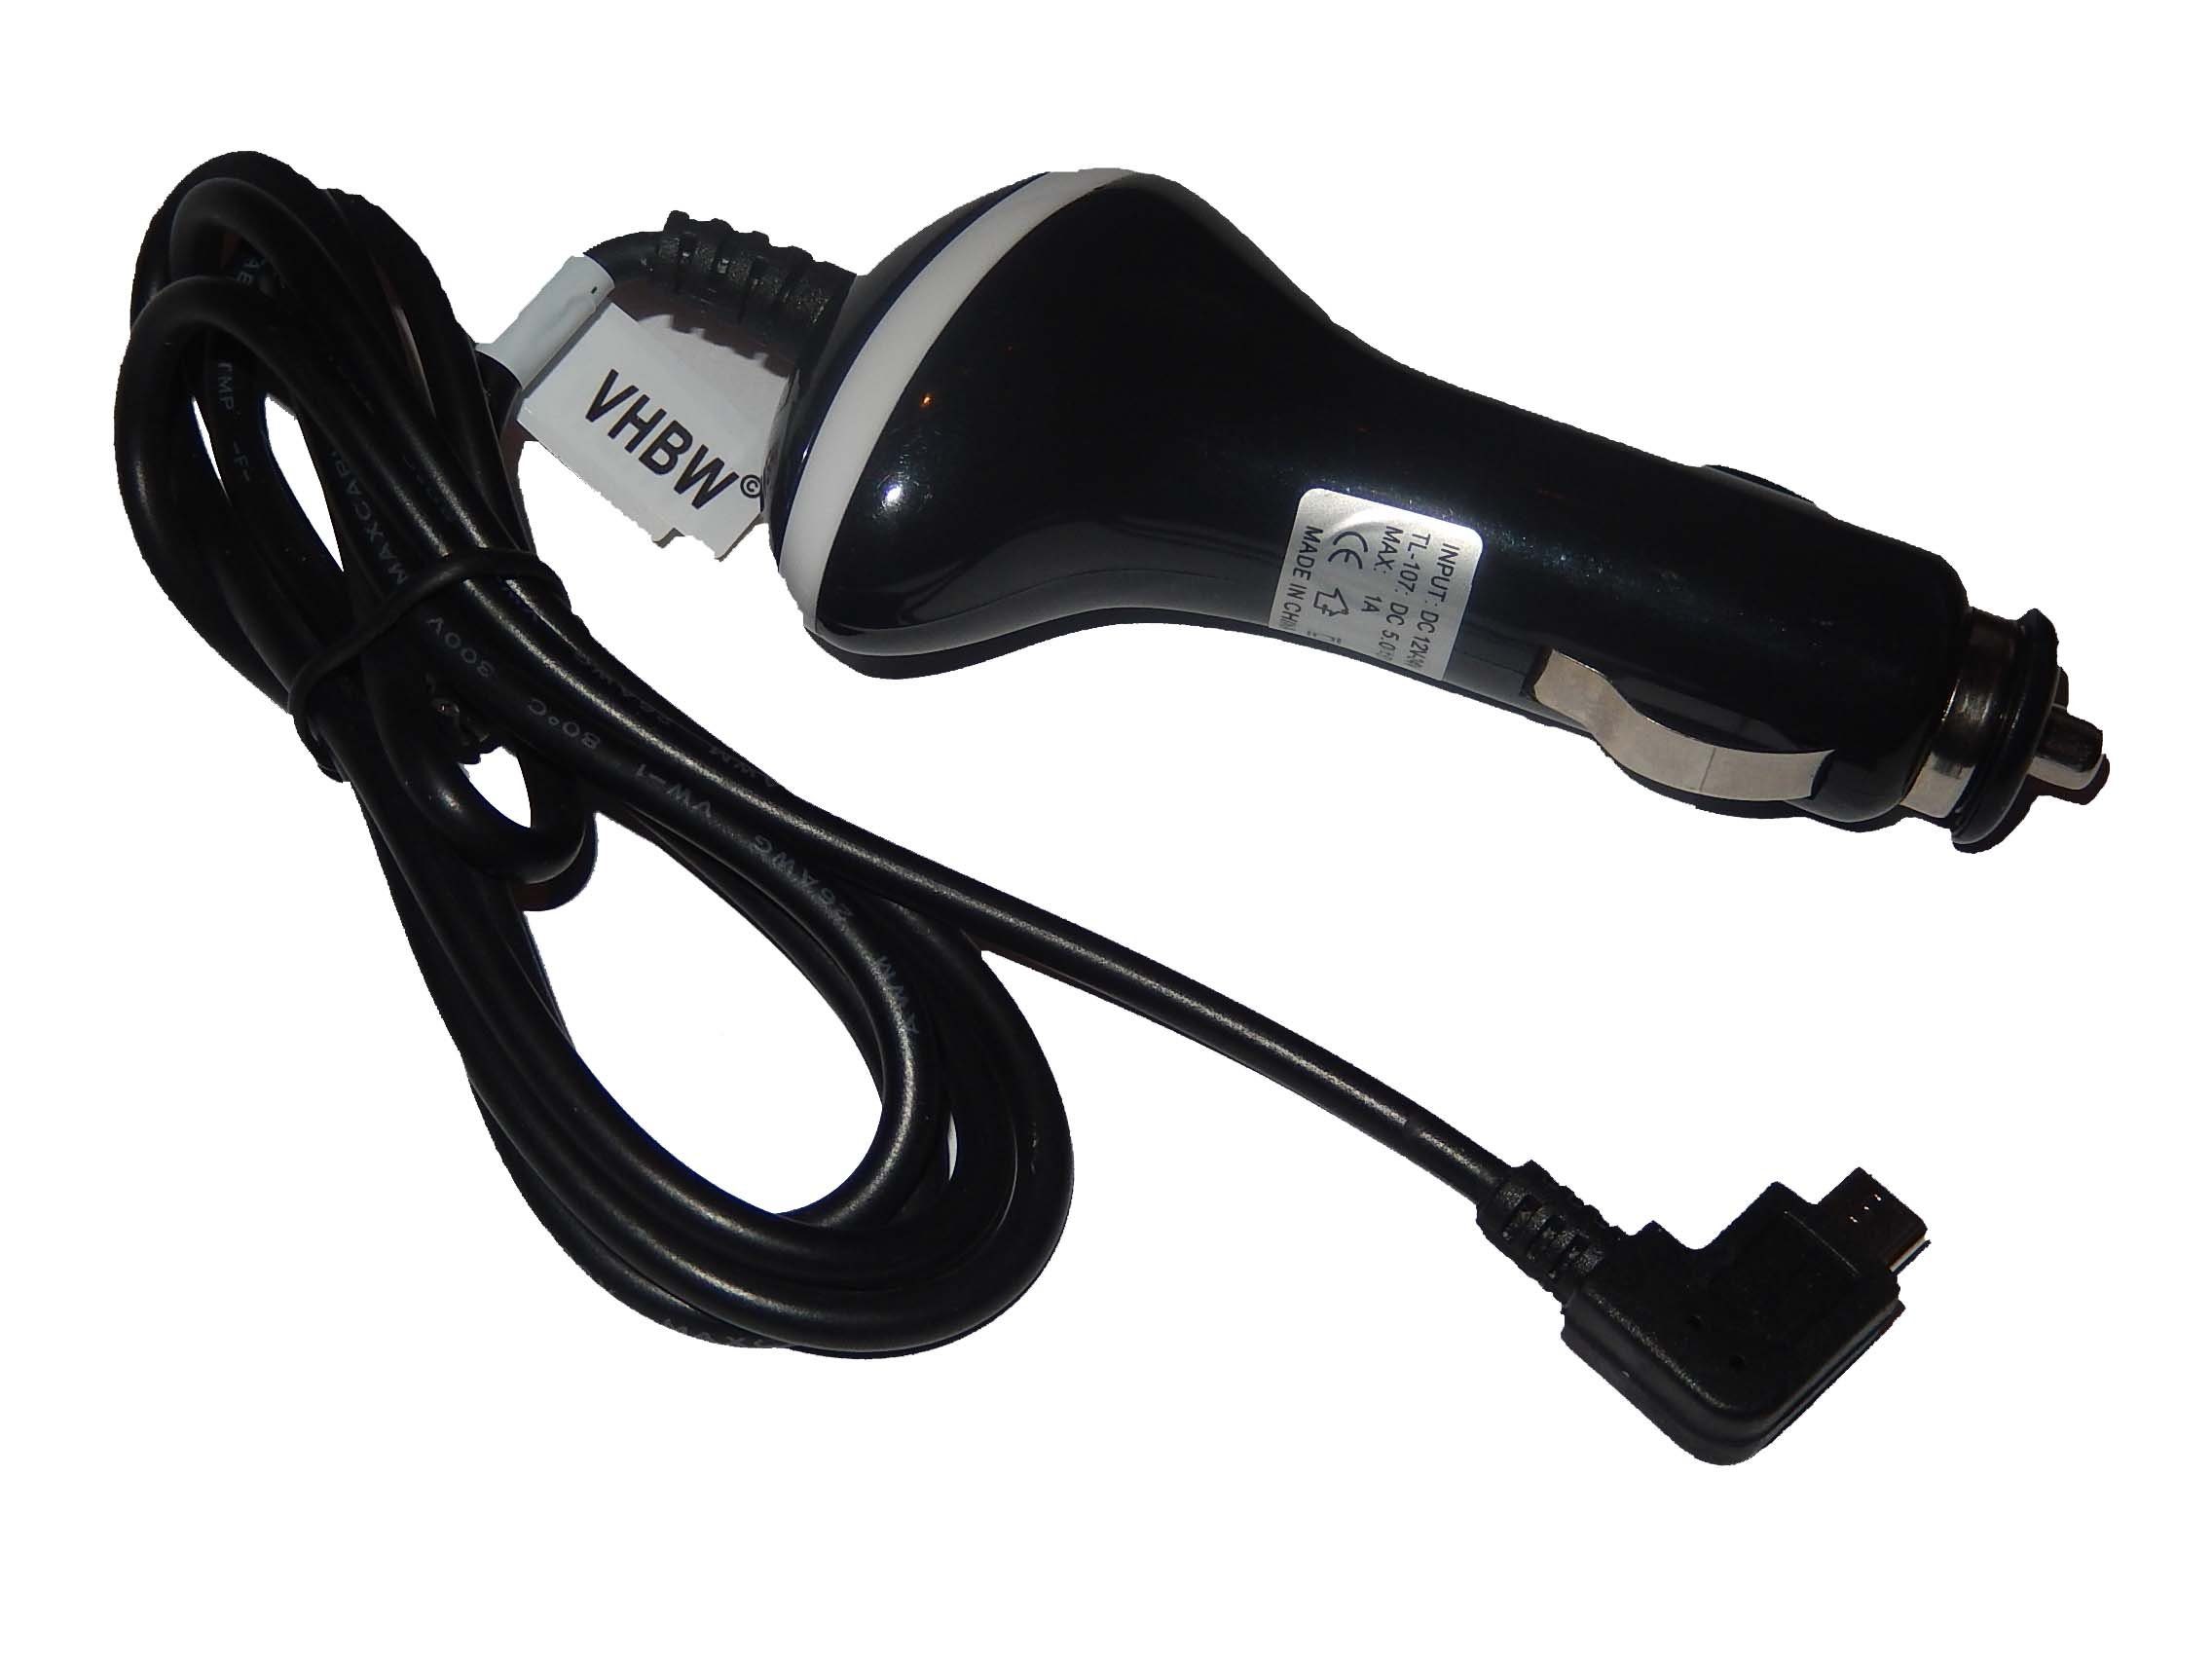 vhbw USB-Kabel, passend für Bea-fon SL320, SL560, SL570, SL340, SL470  online kaufen | OTTO